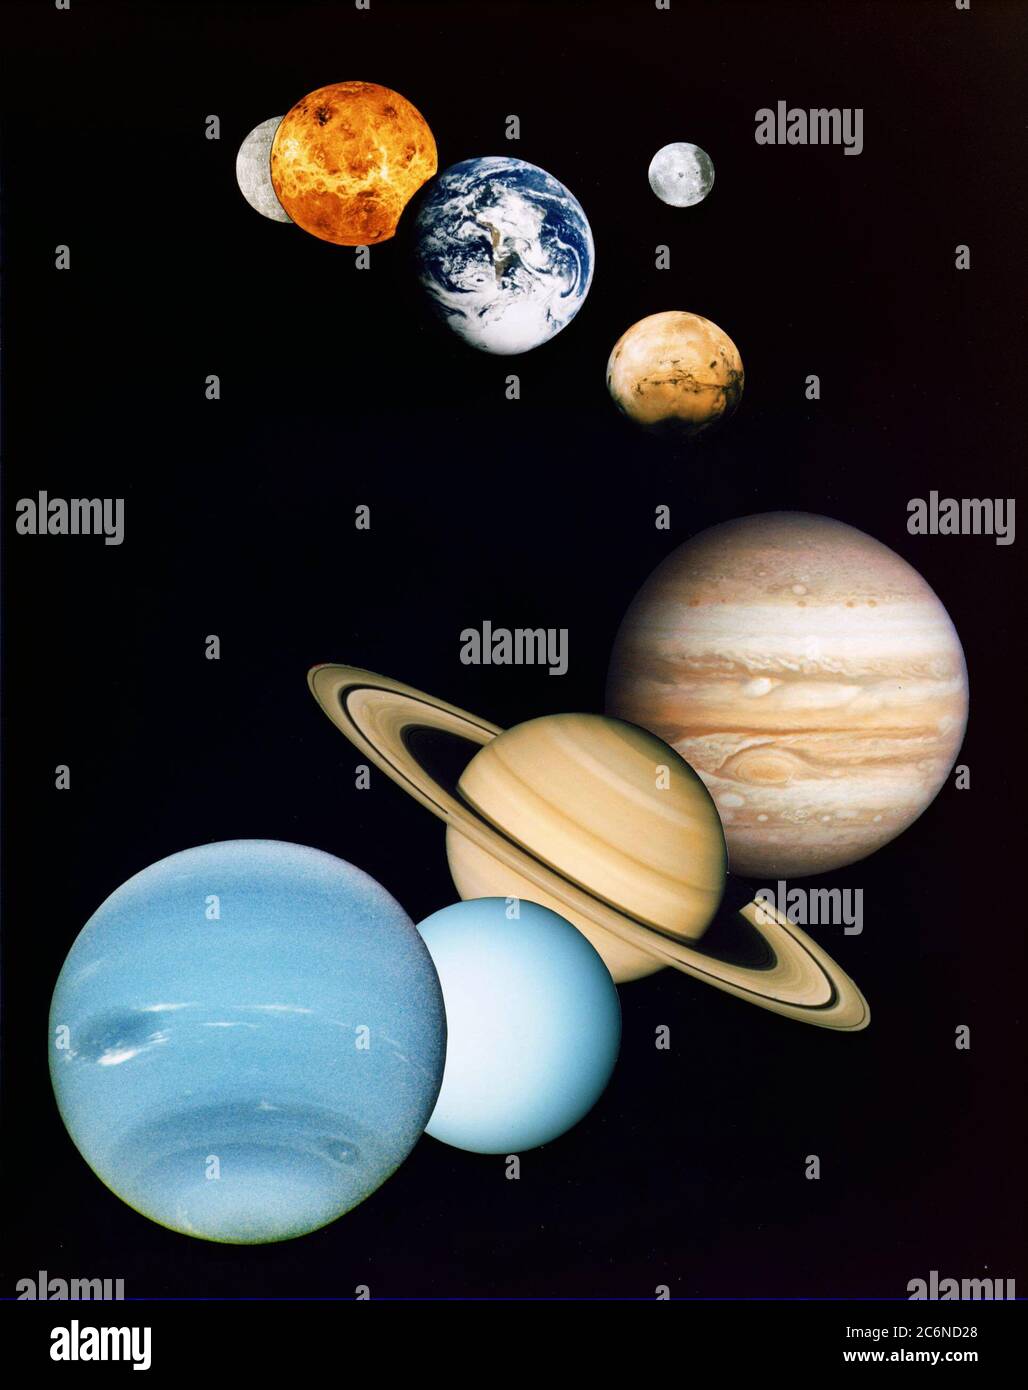 Il s'agit d'un montage d'images planétaires prises par des engins spatiaux gérés par le Jet propulsion Laboratory de la NASA à Pasadena, en Californie. On y trouve (de haut en bas) des images de Mercure, Vénus, Terre (et Lune), Mars, Jupiter, Saturne, Uranus et Neptune ca. 1997 Banque D'Images